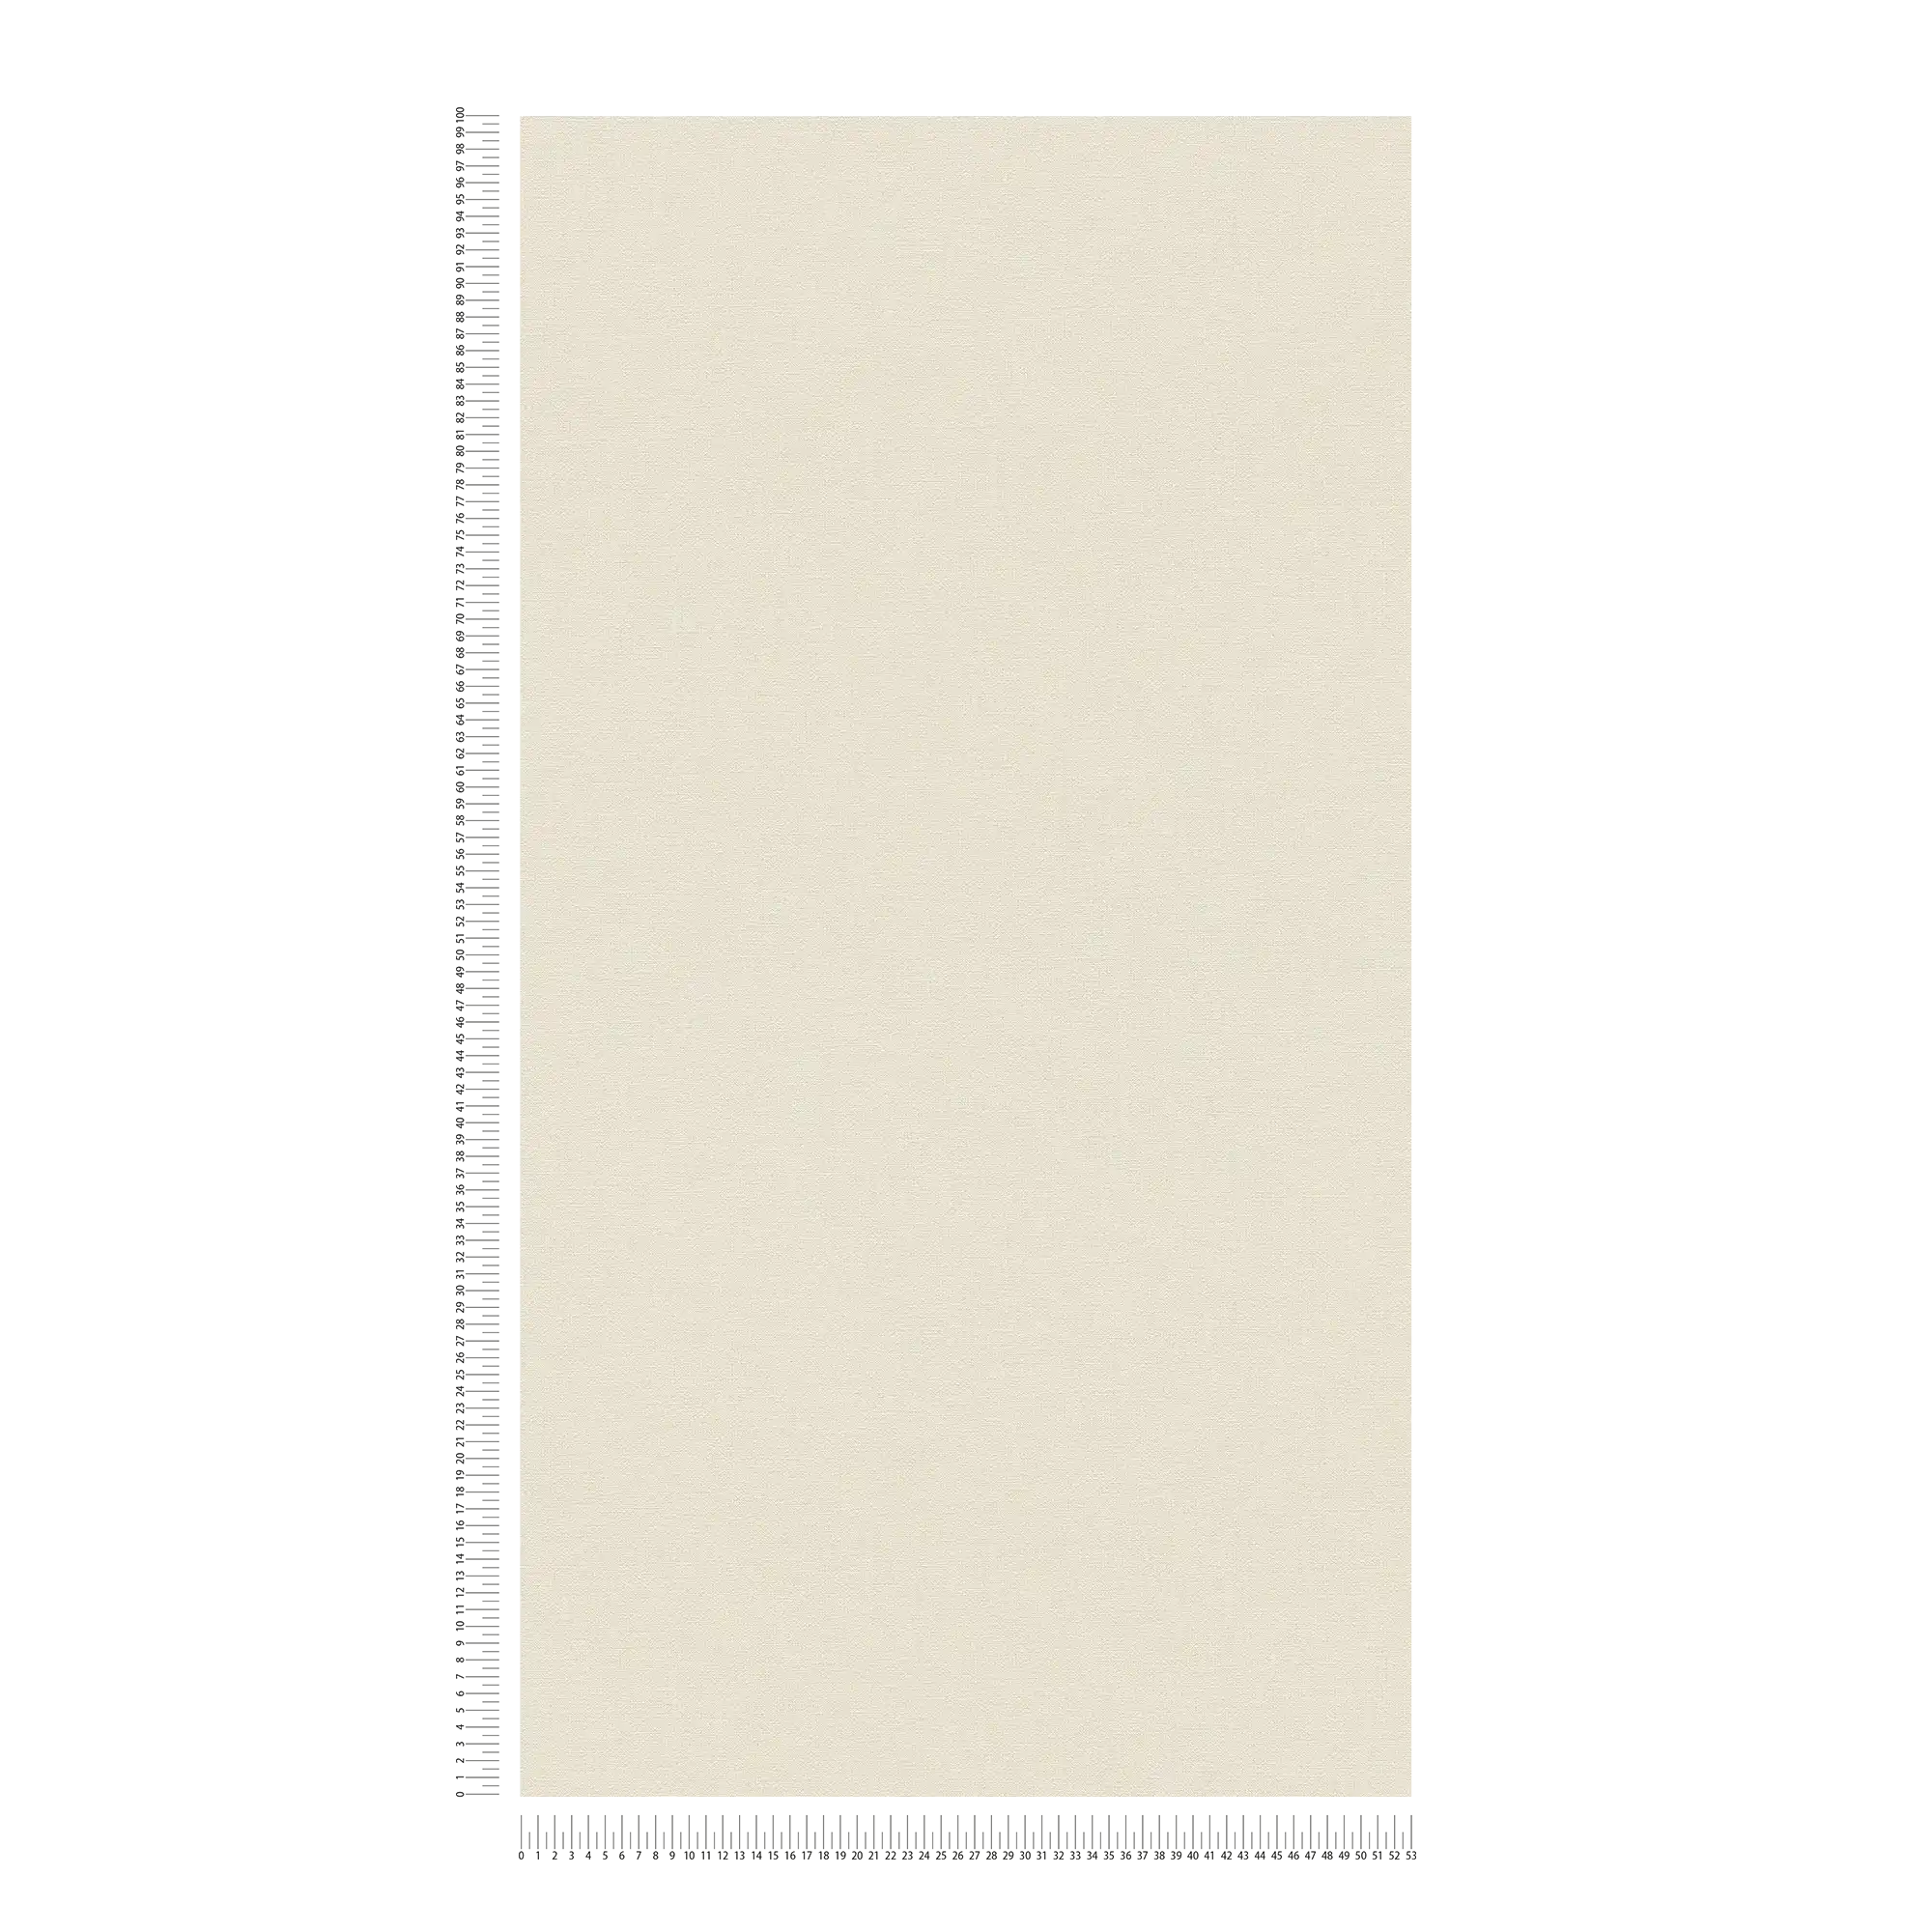             Carta da parati unitaria senza PVC con effetto lino - beige, bianco
        